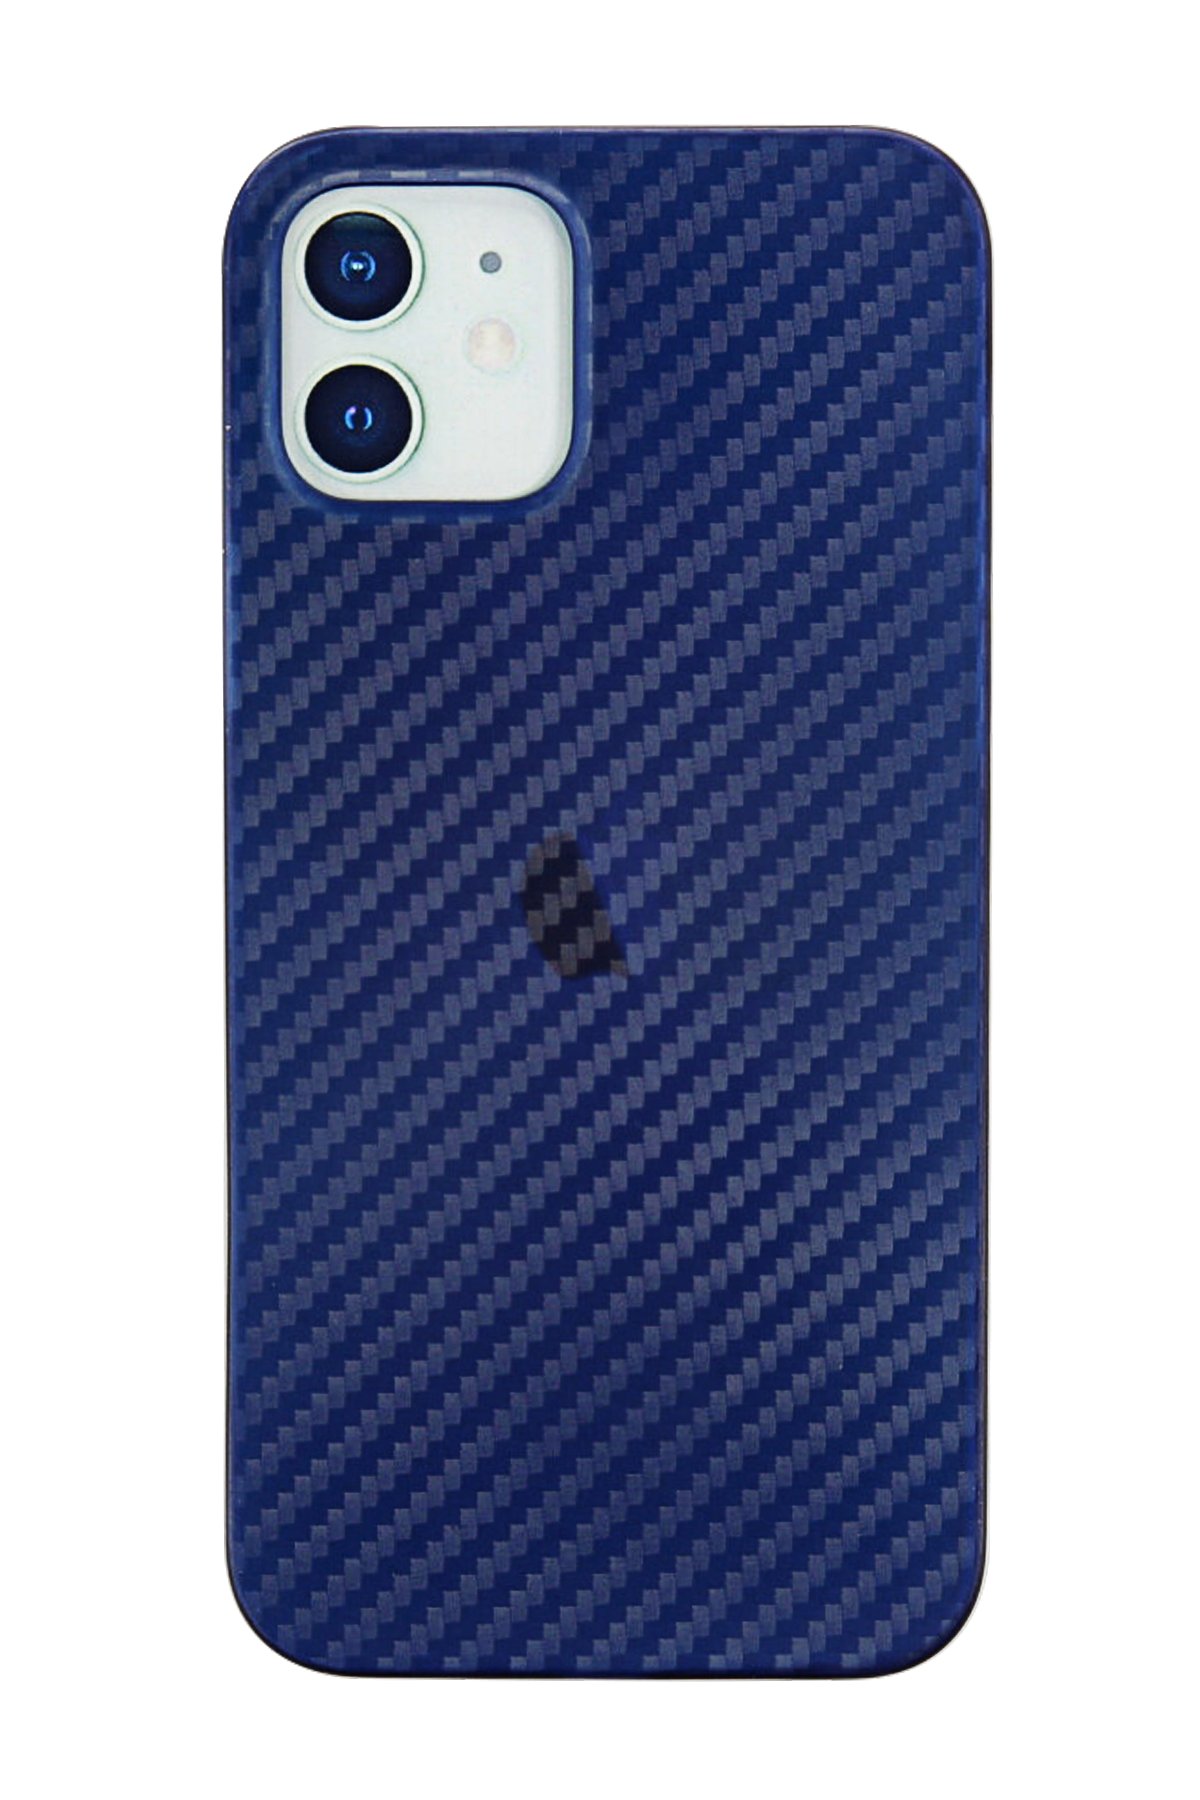 NewFace Newface iPhone 12 Kılıf Karbon PP Silikon - Mavi